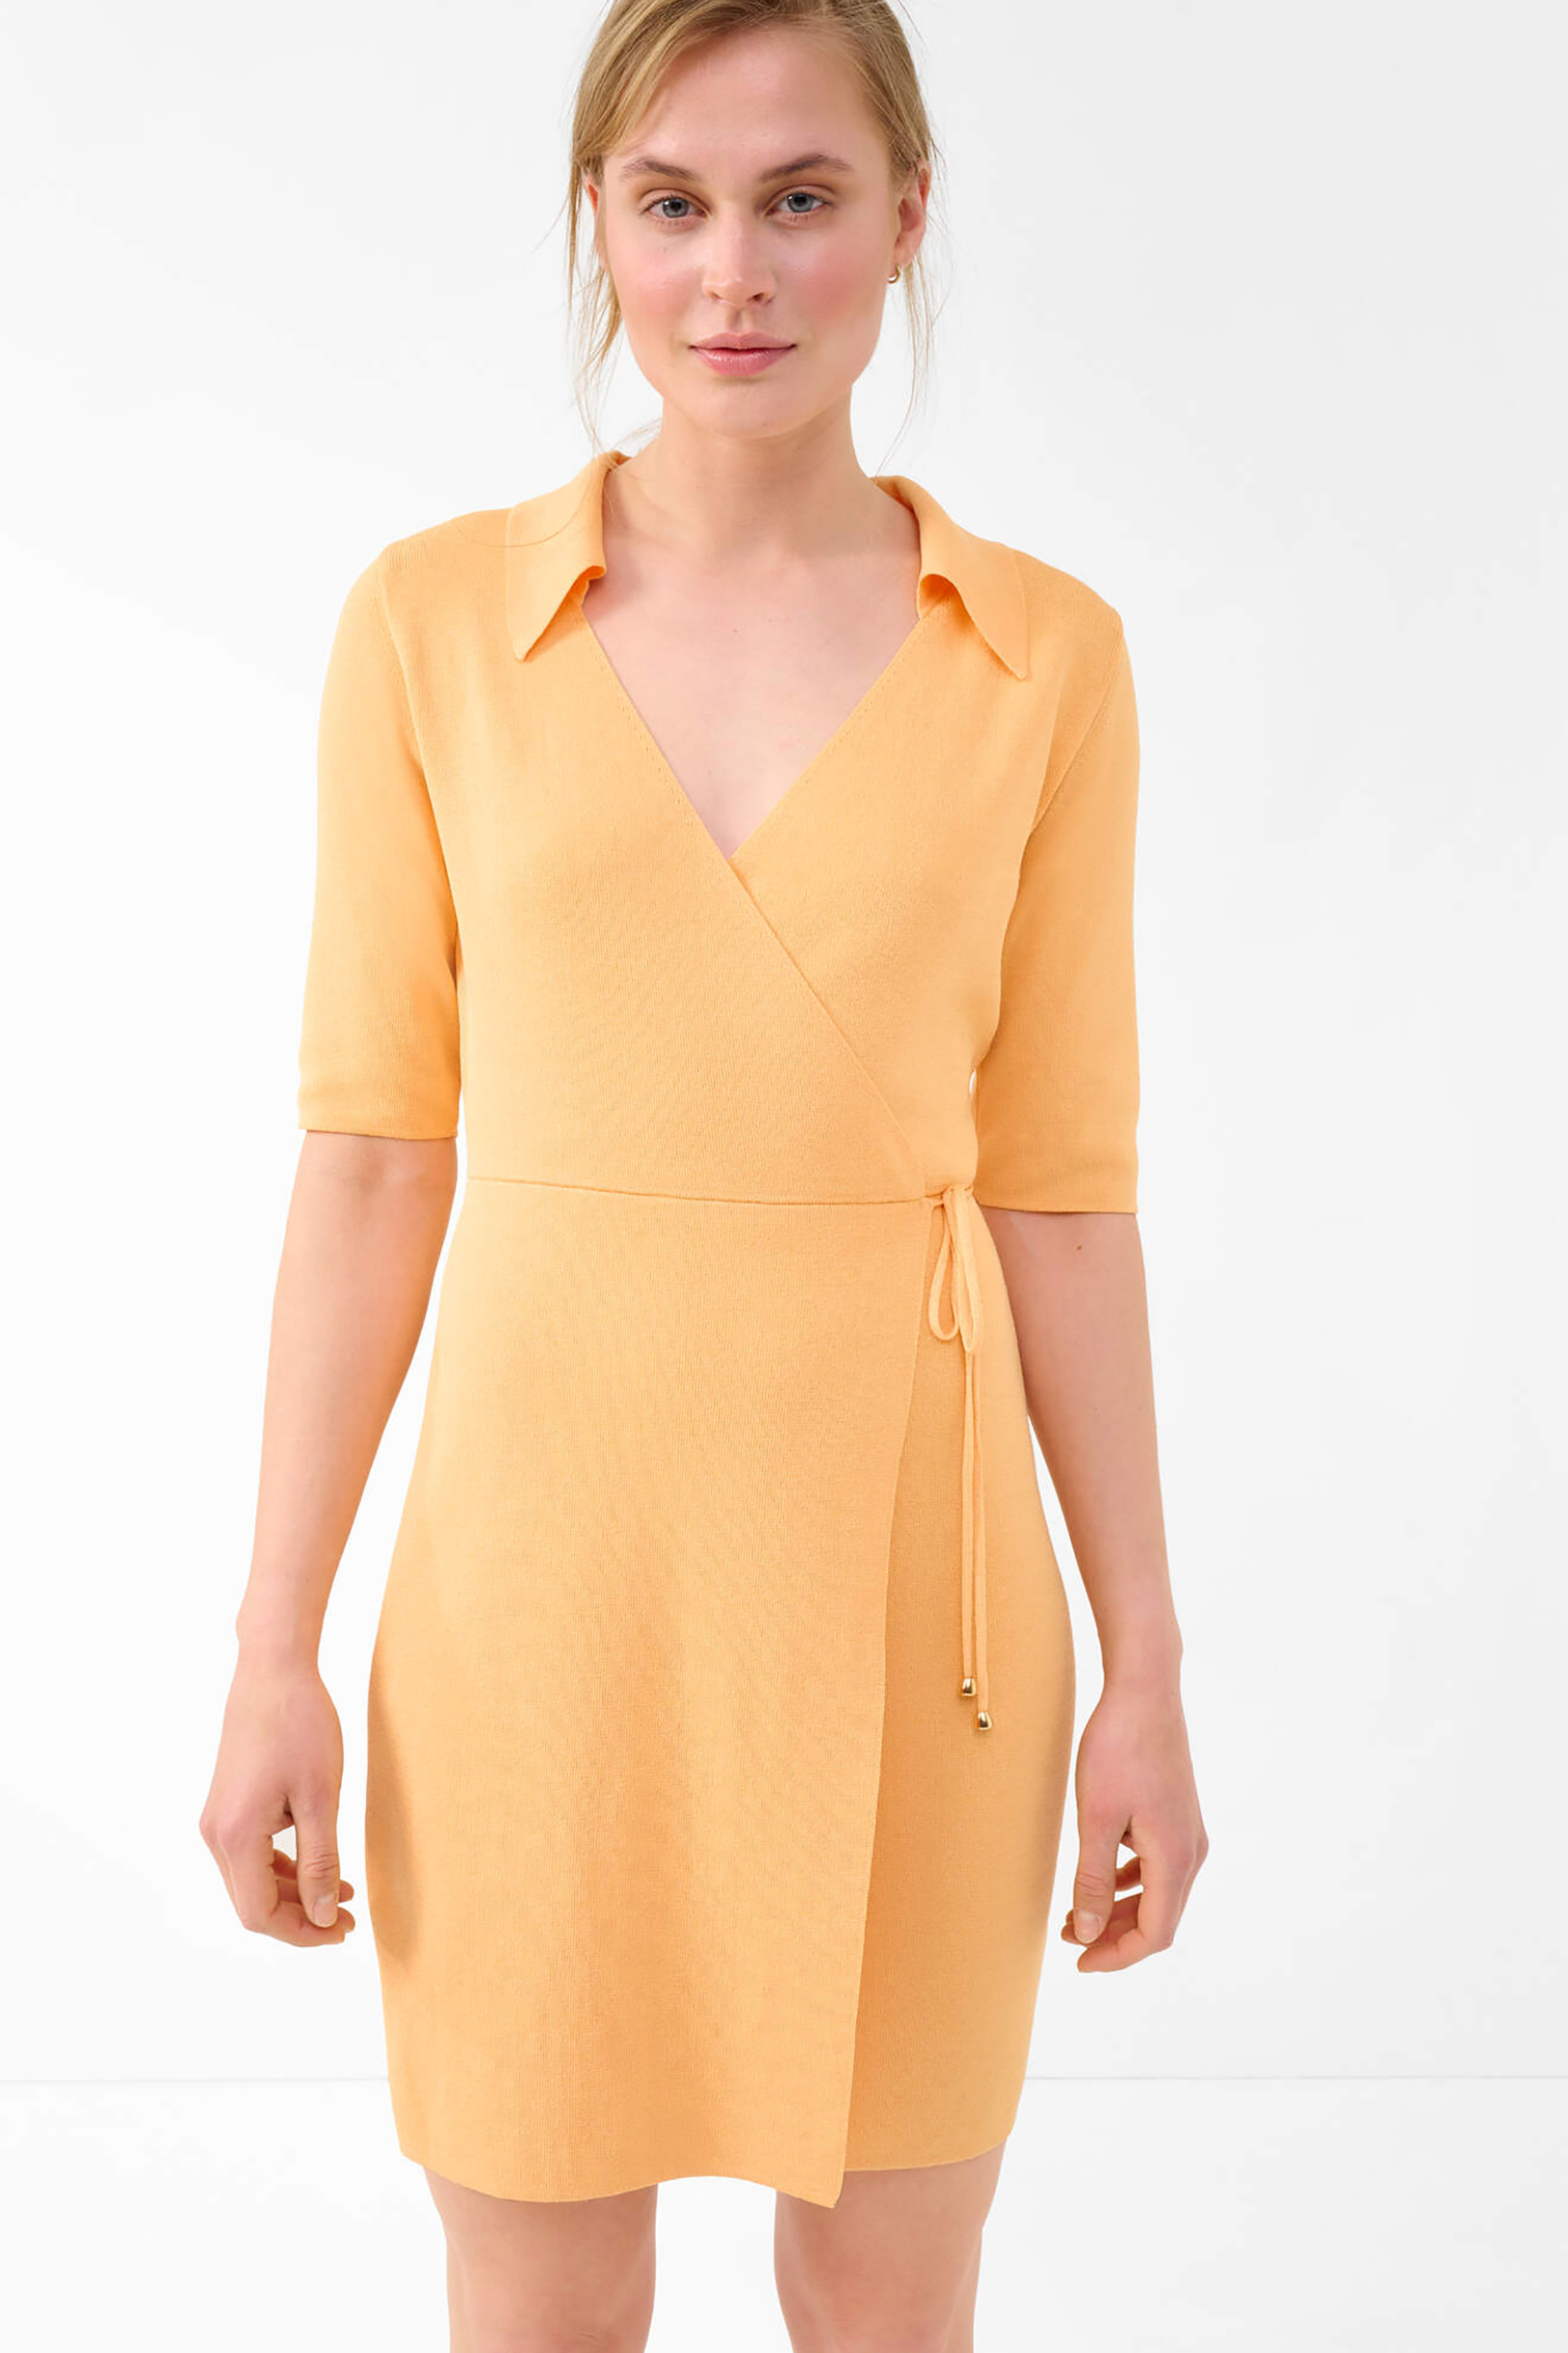 Γυναίκα > ΡΟΥΧΑ > Φορέματα > Mini Orsay γυναικείο mini φόρεμα κρουαζέ - 530287-240000 Πορτοκαλί